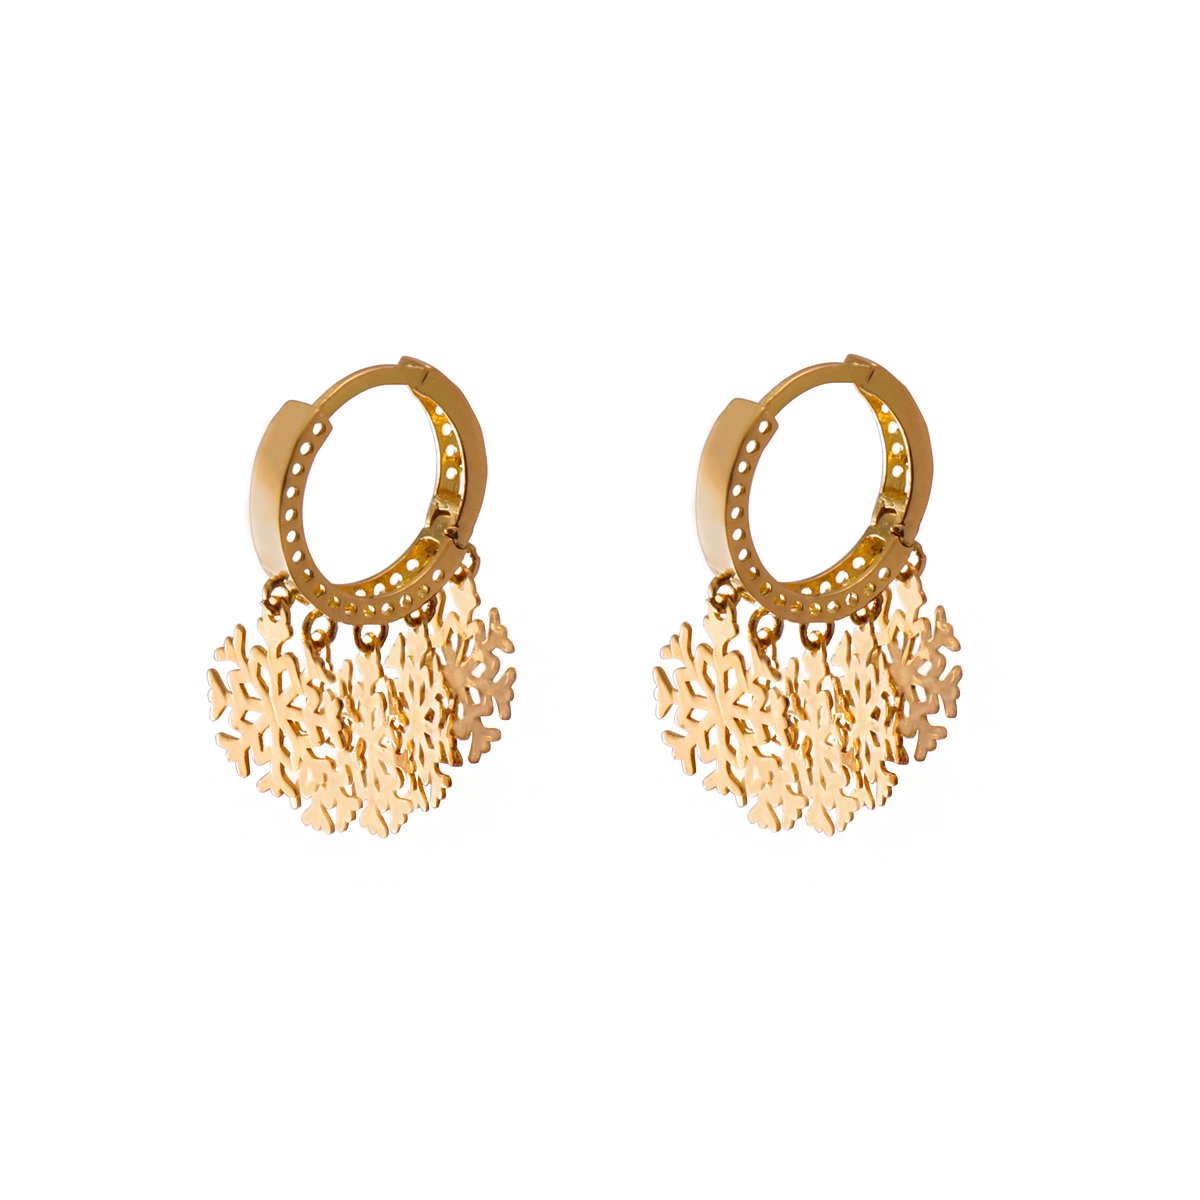 18.44 grams golden earrings 4.42 grams